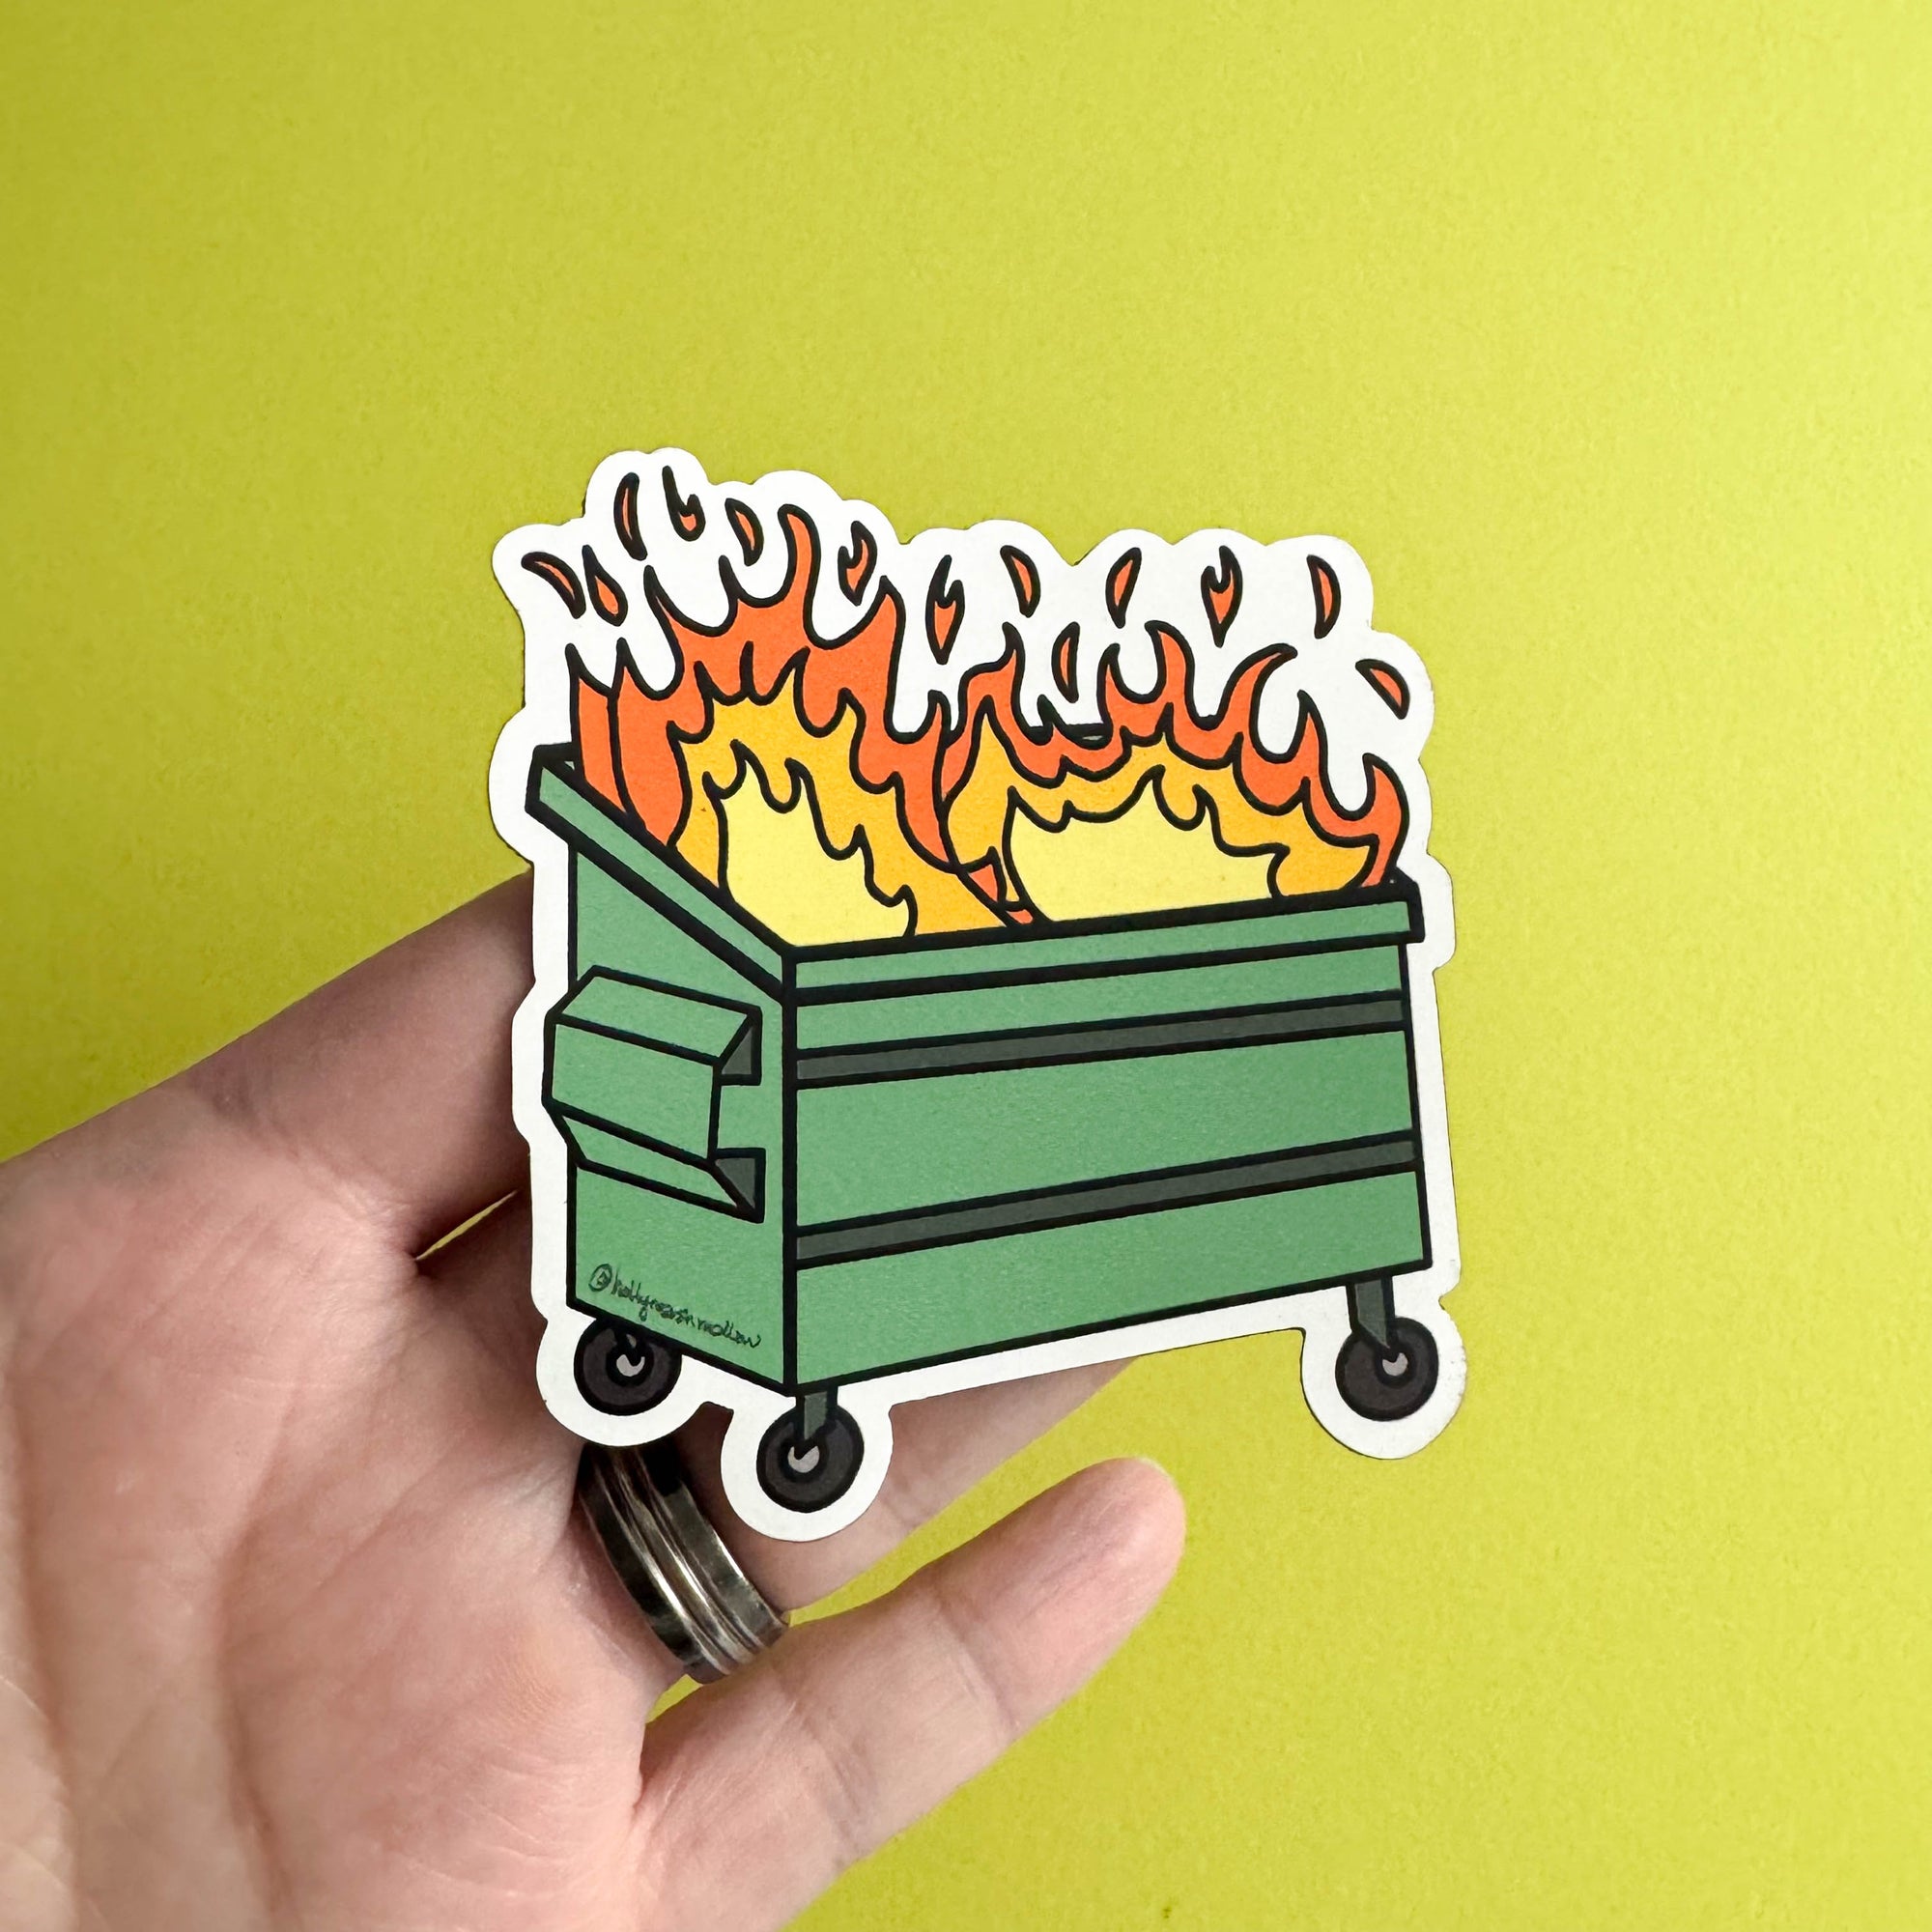 Dumpster Fire Magnet